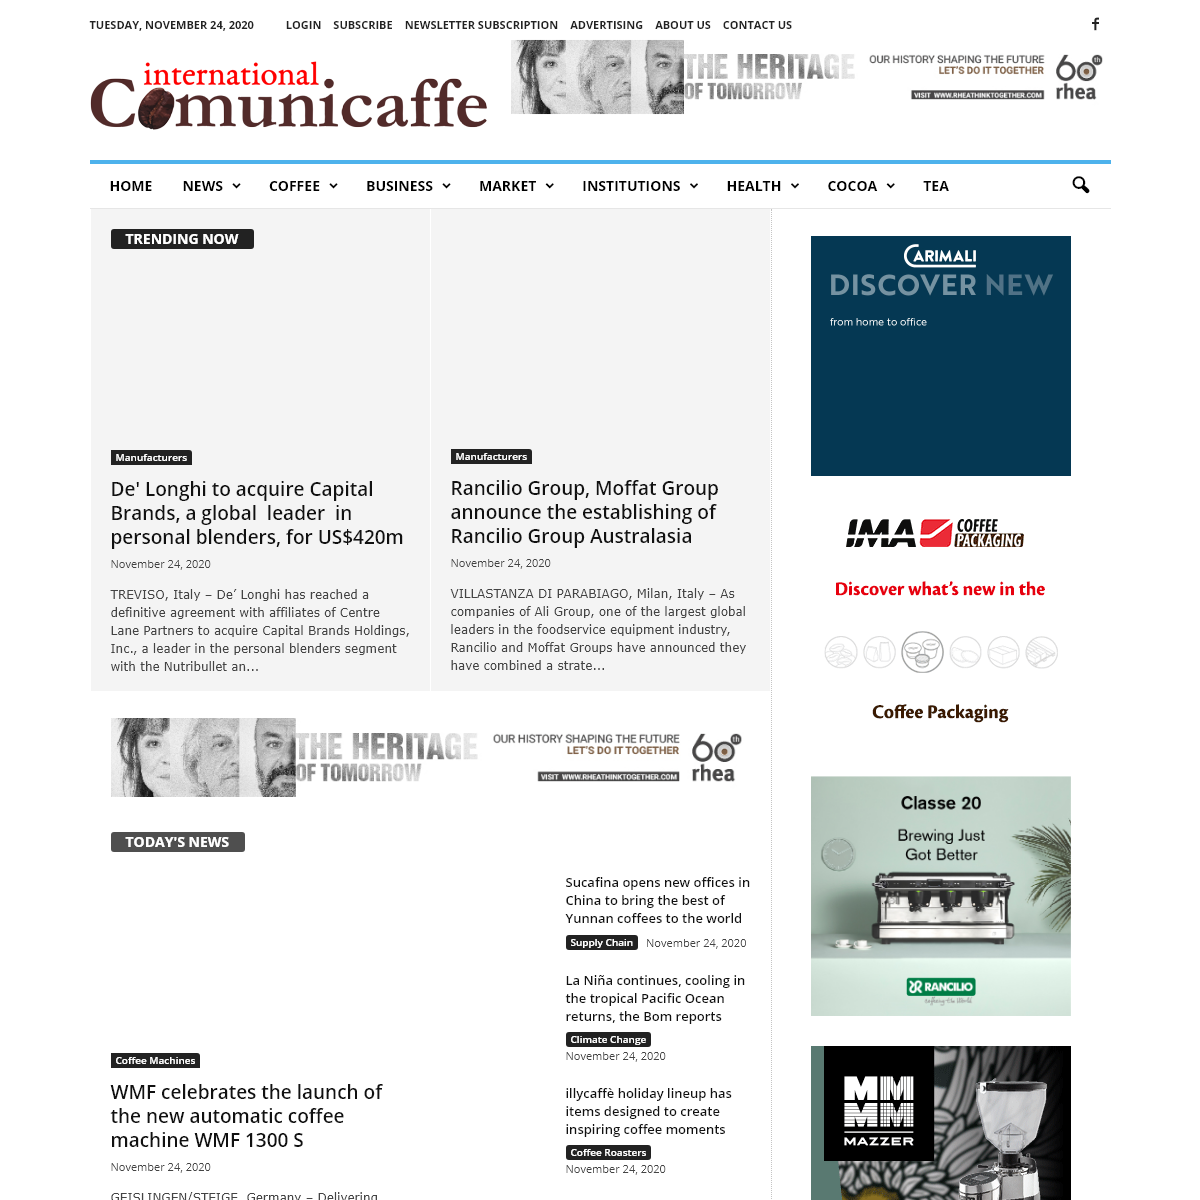 A complete backup of comunicaffe.com